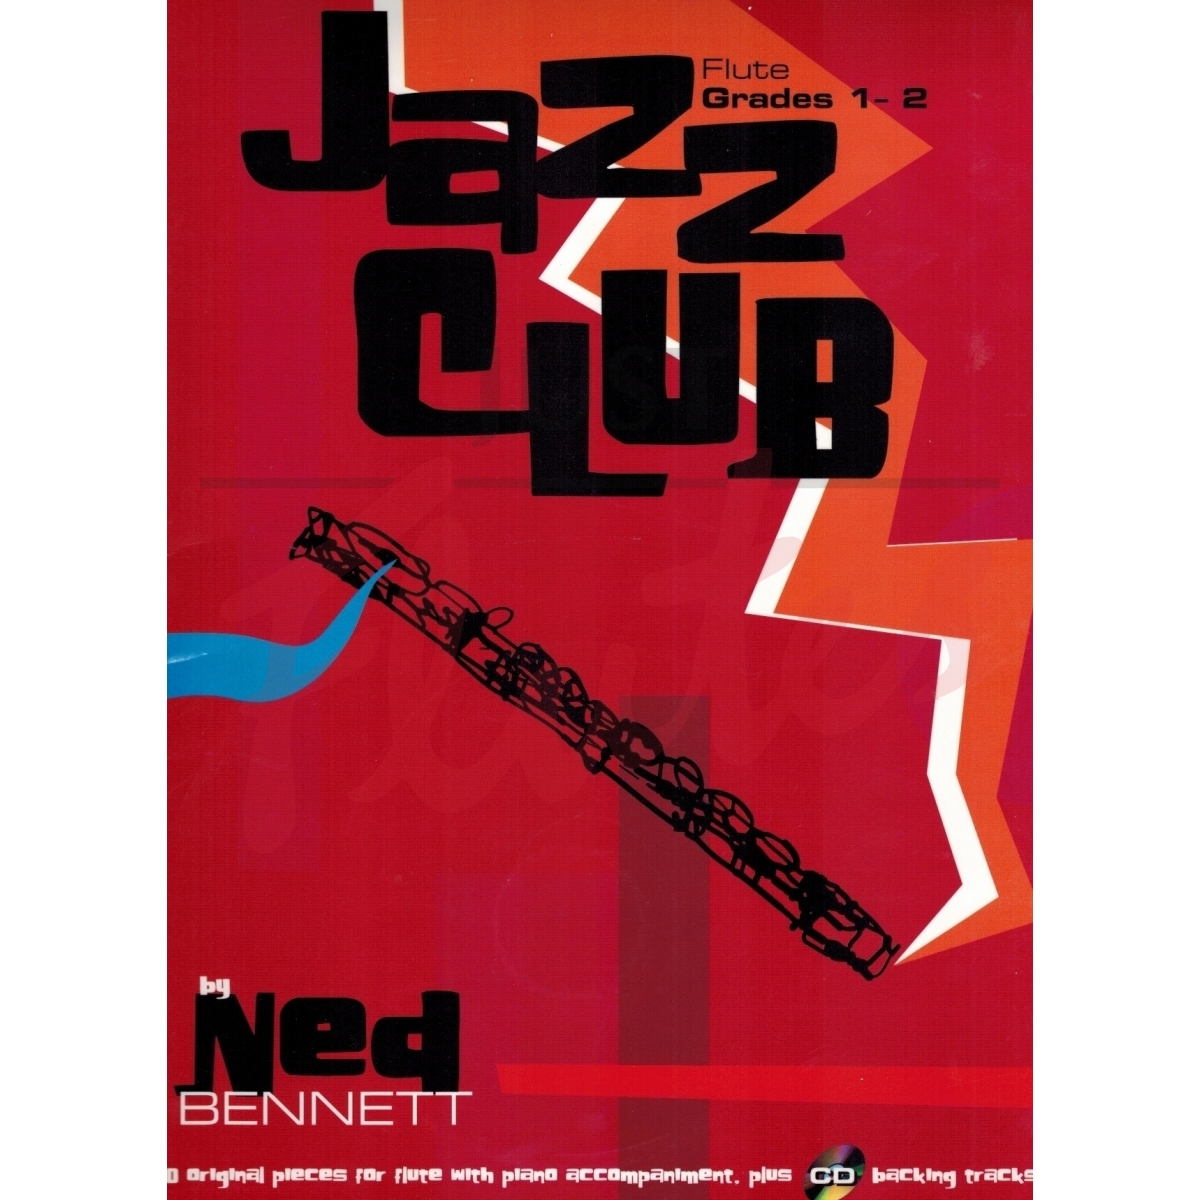 Jazz Club [Flute] Grades 1-2